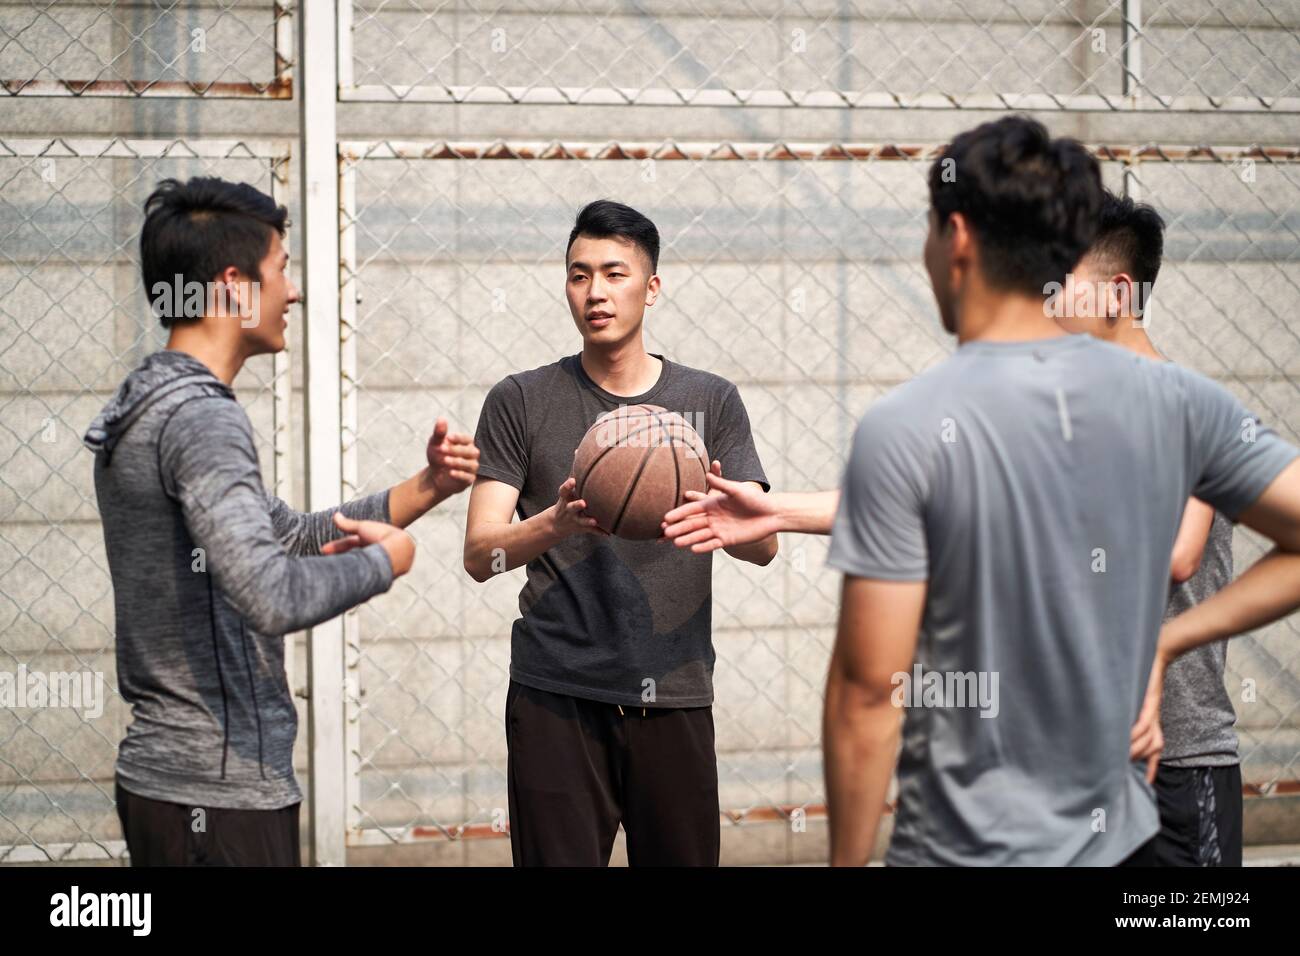 de jeunes joueurs de basket-ball asiatiques bavardent en parlant en se relaxant sur un terrain en plein air Banque D'Images